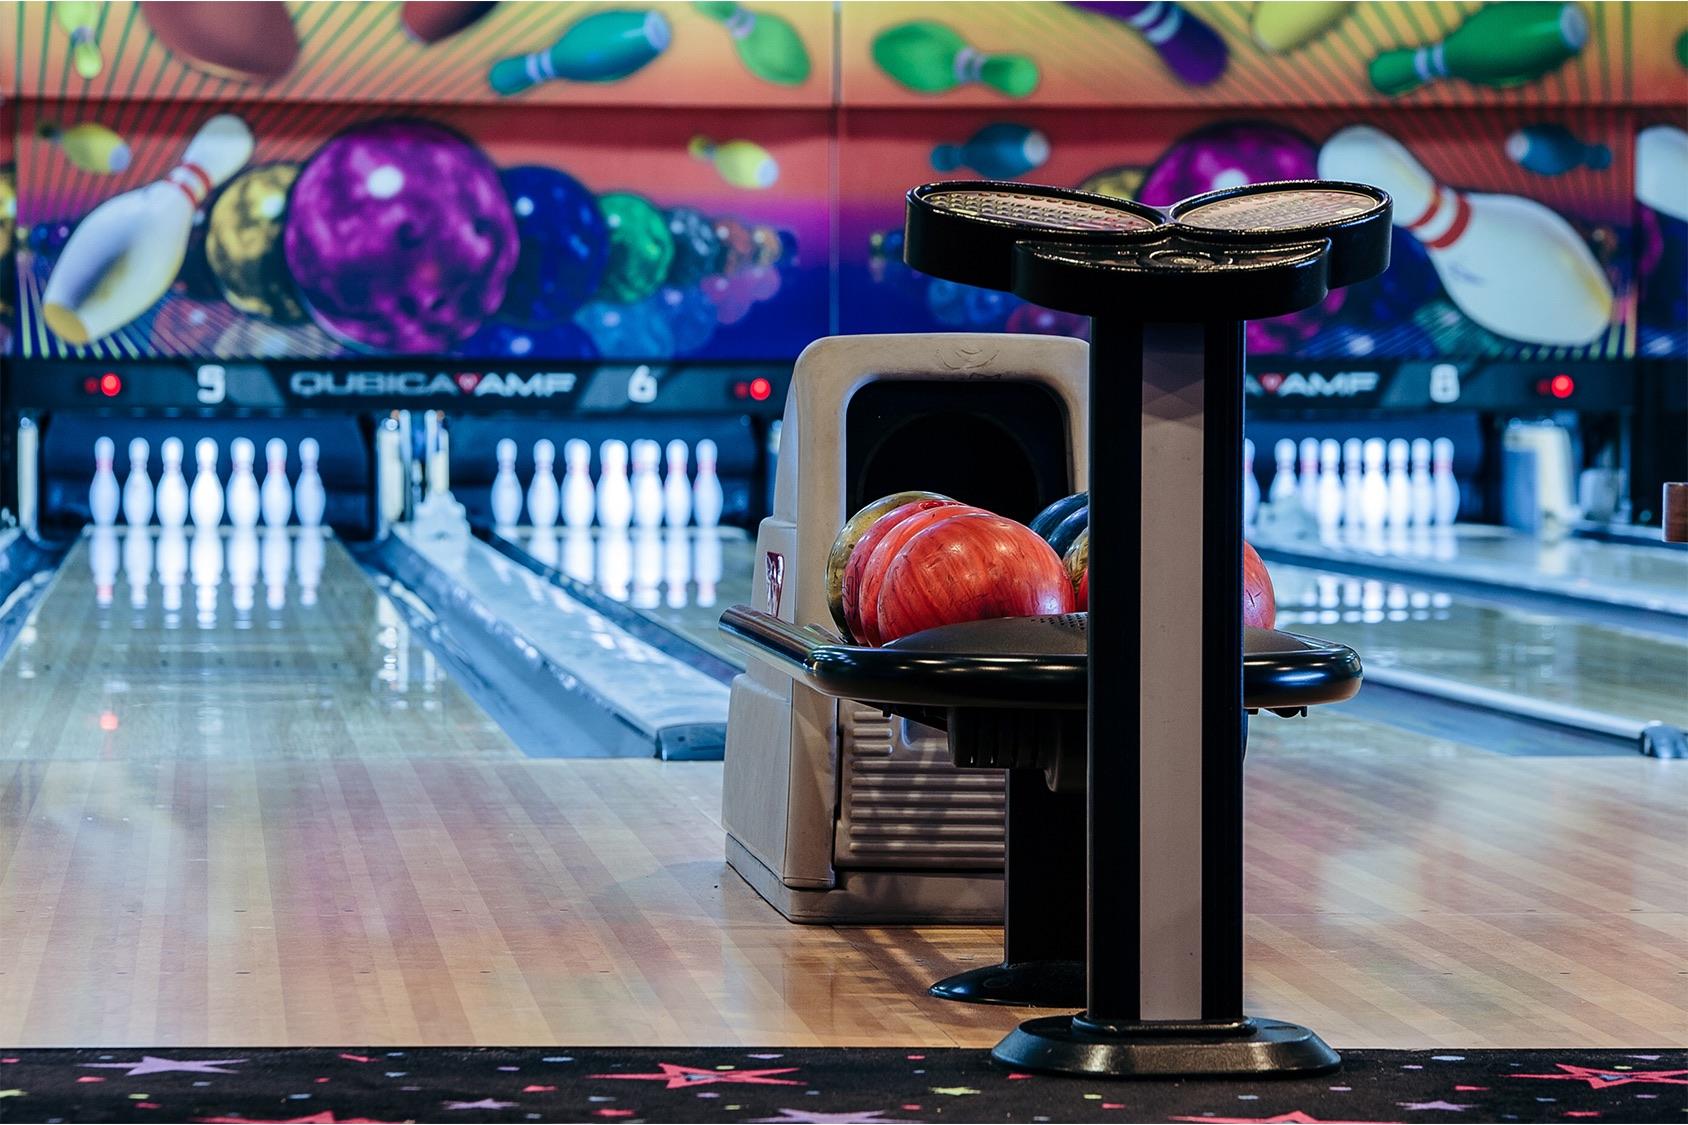 Atlantis Bowling, an image of bowling pins and balls